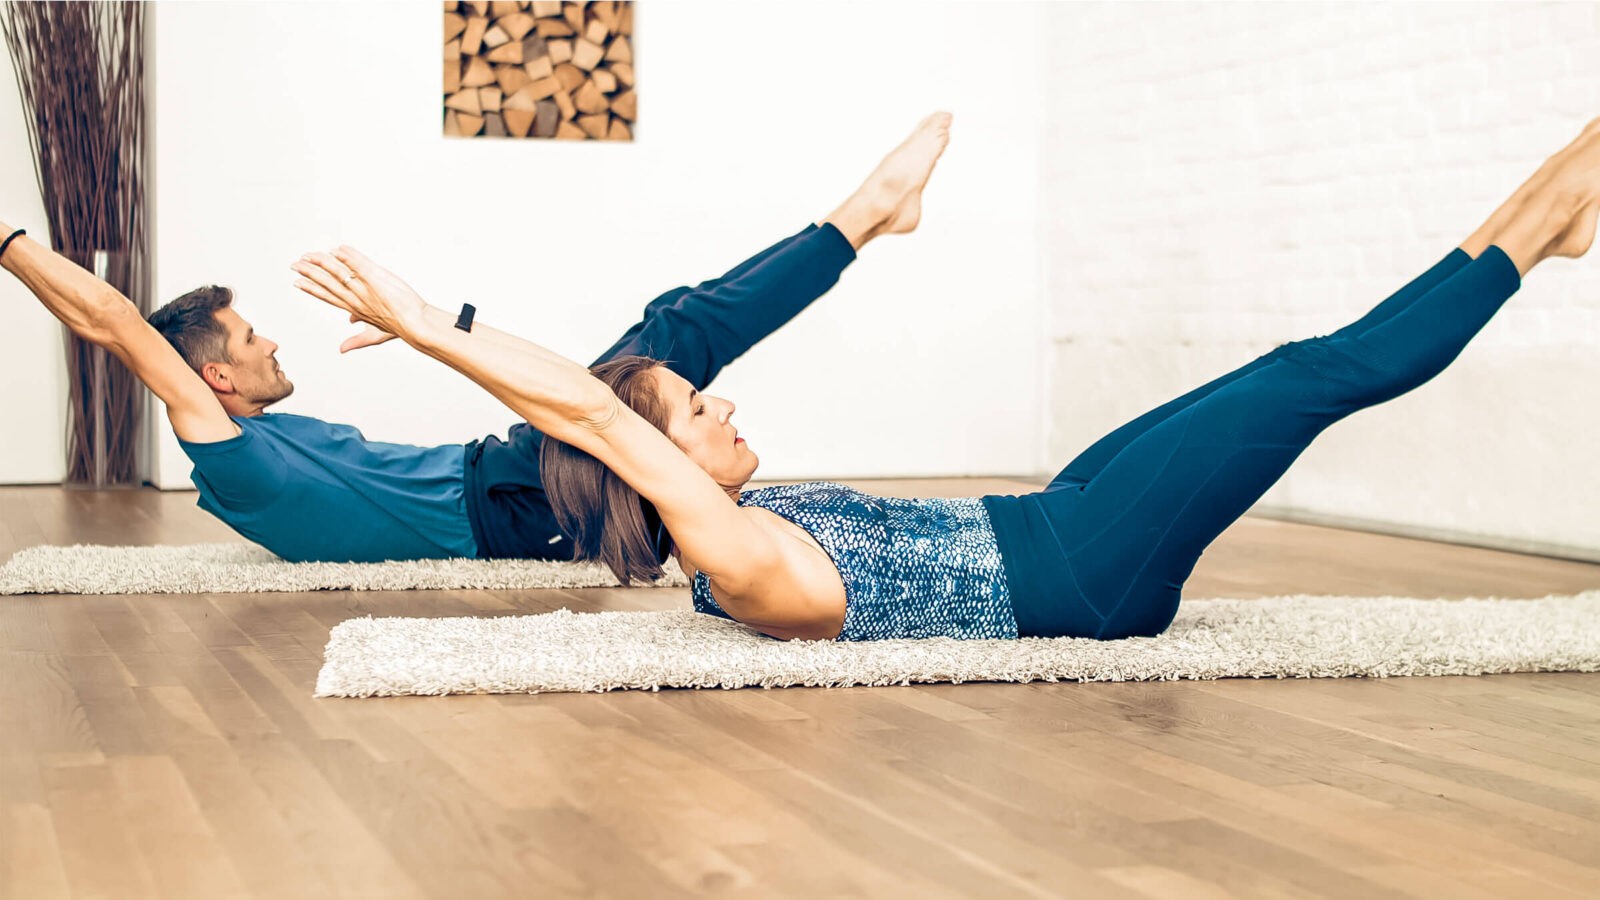 Double leg stretch pilates stock photo. Image of exercising